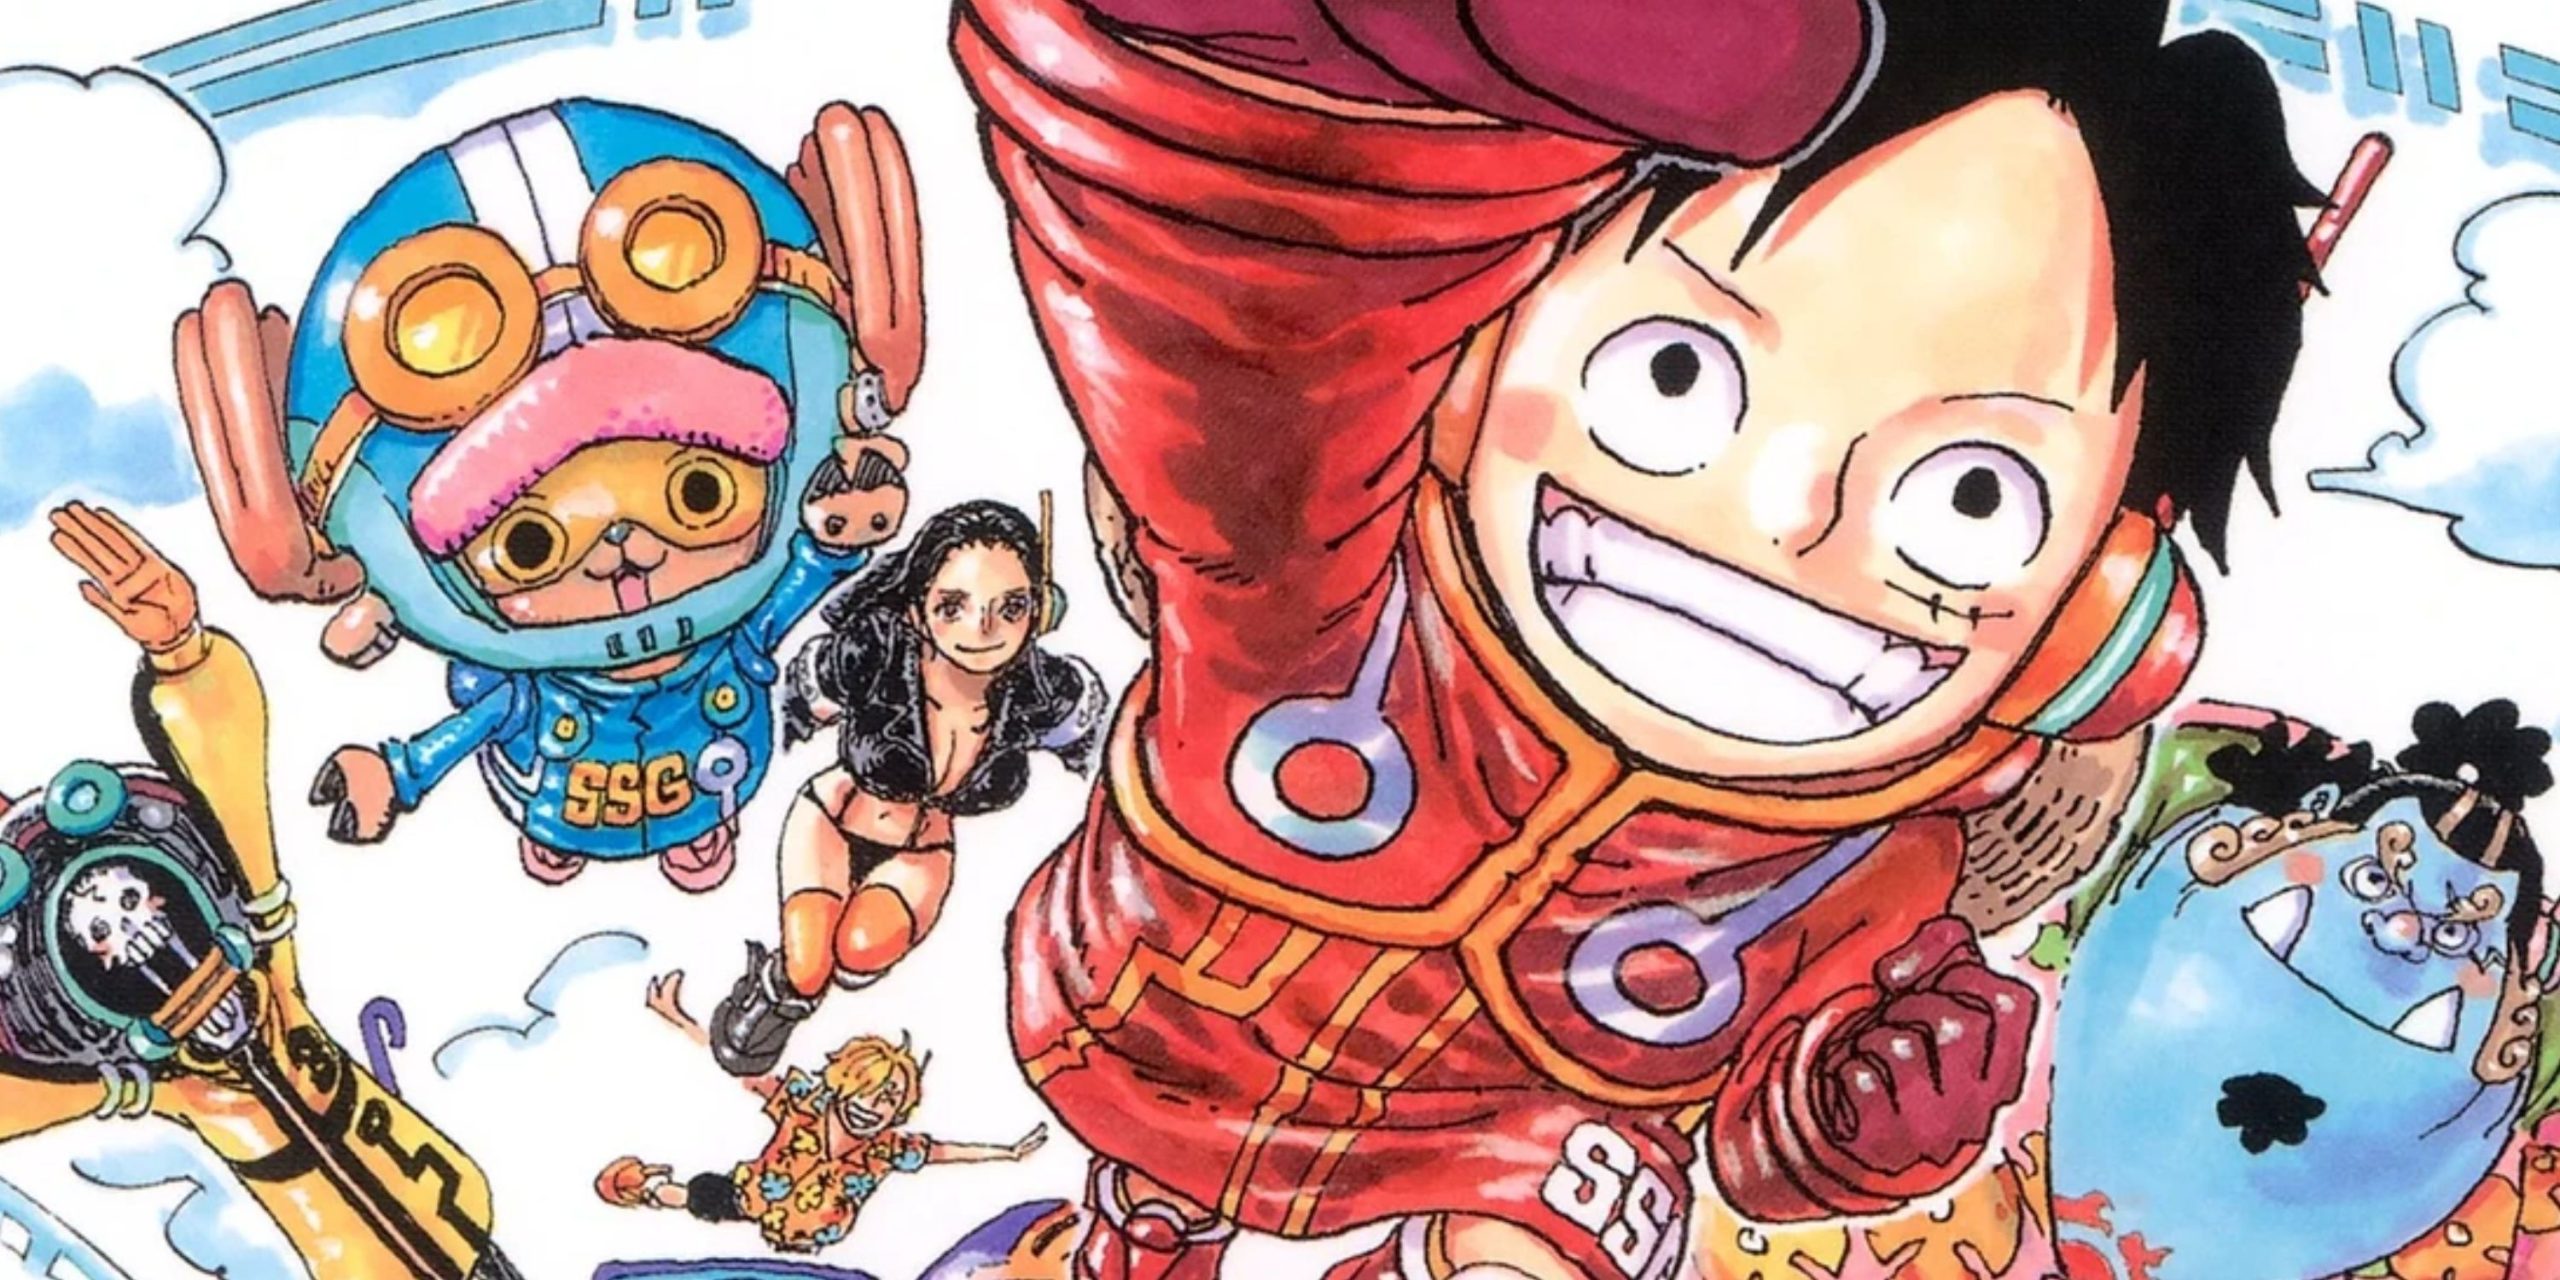 Теория One Piece Глава 1106 утверждает, что Эйитиро Ода скопировал знаменитый фильм Диснея, чтобы написать концовку арки «Яйцеголовый»